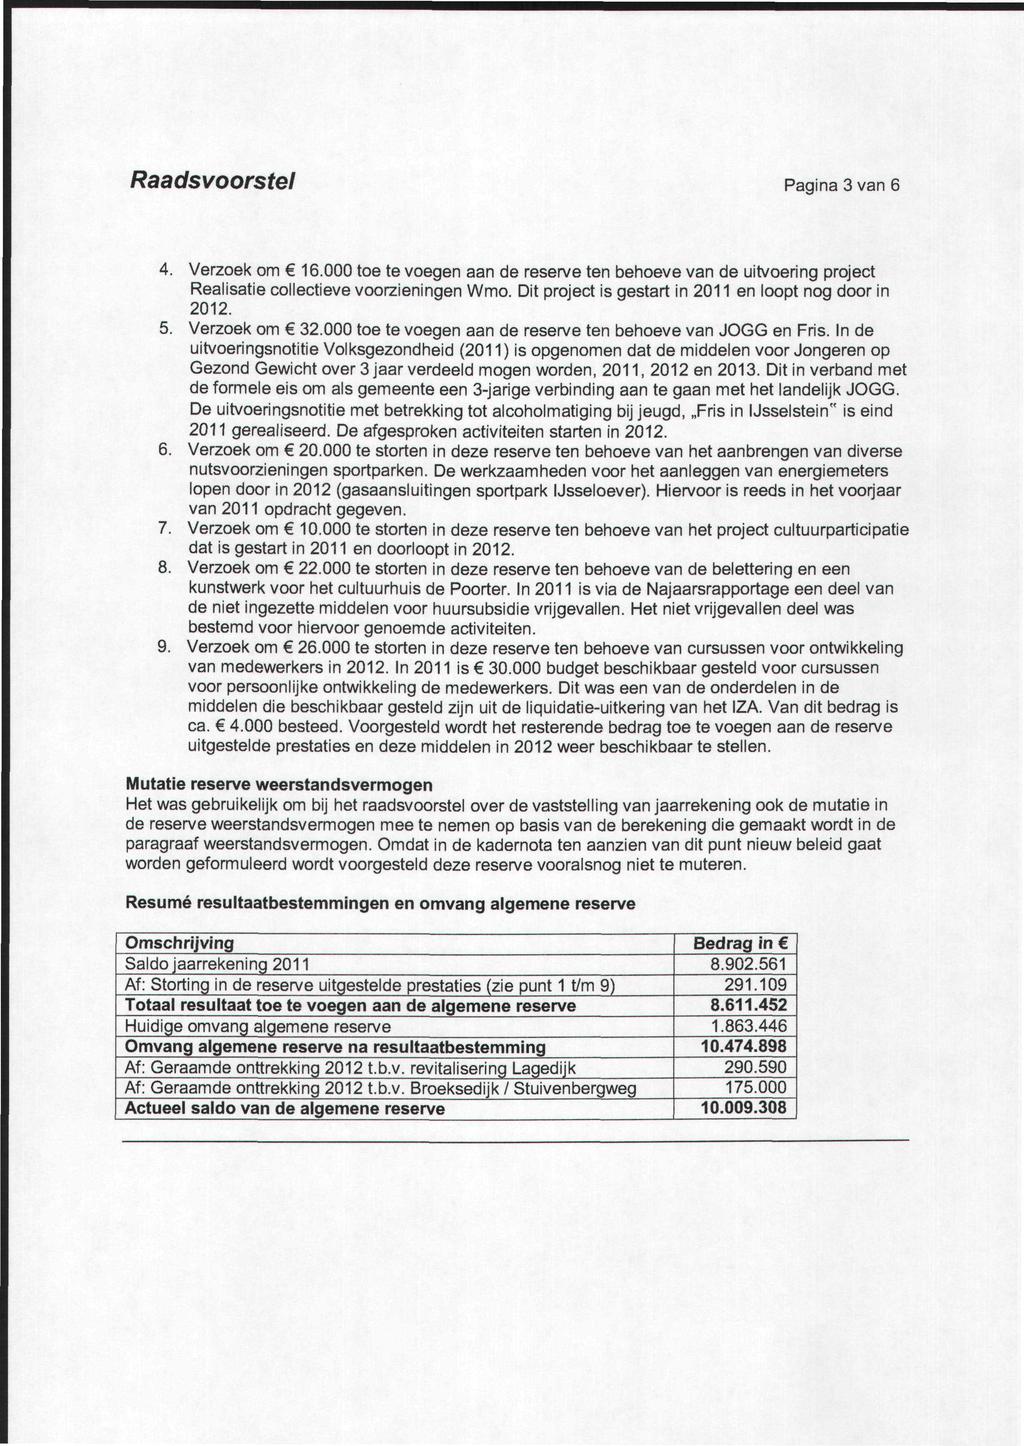 Raadsvoorstel Pagina 3 van 6 4. erzoek om 16.000 toe te voegen aan de reserve ten behoeve van de uitvoering project Realisatie collectieve voorzieningen Wmo.